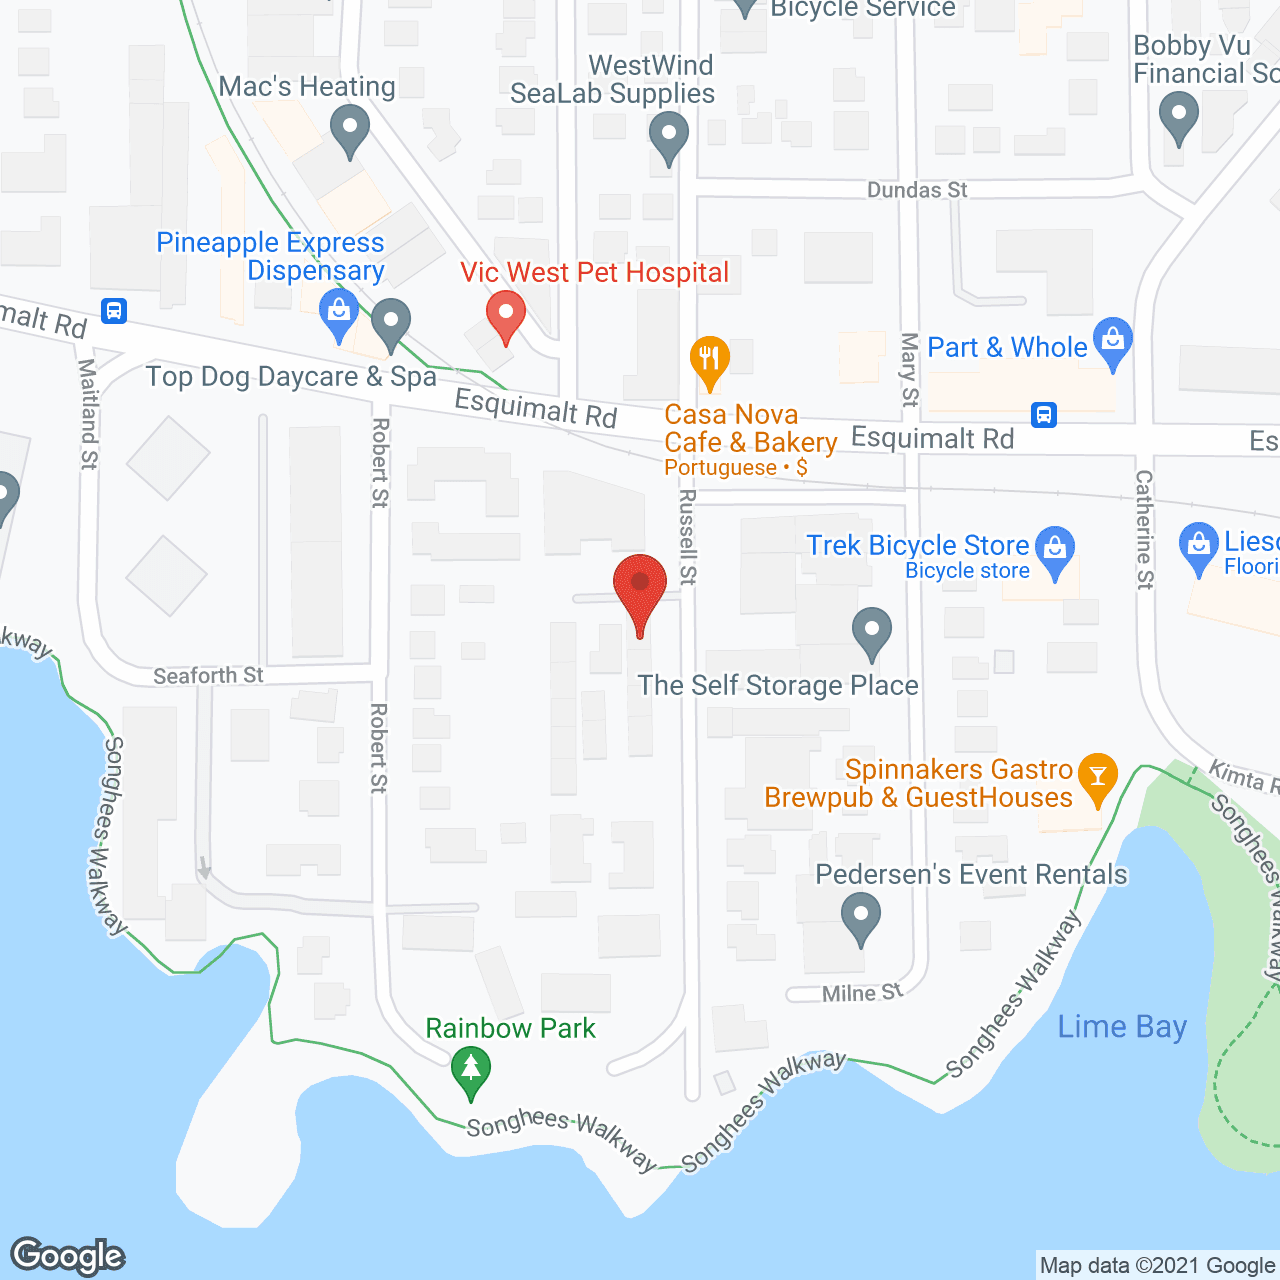 Seawalk Housing Co-Op in google map